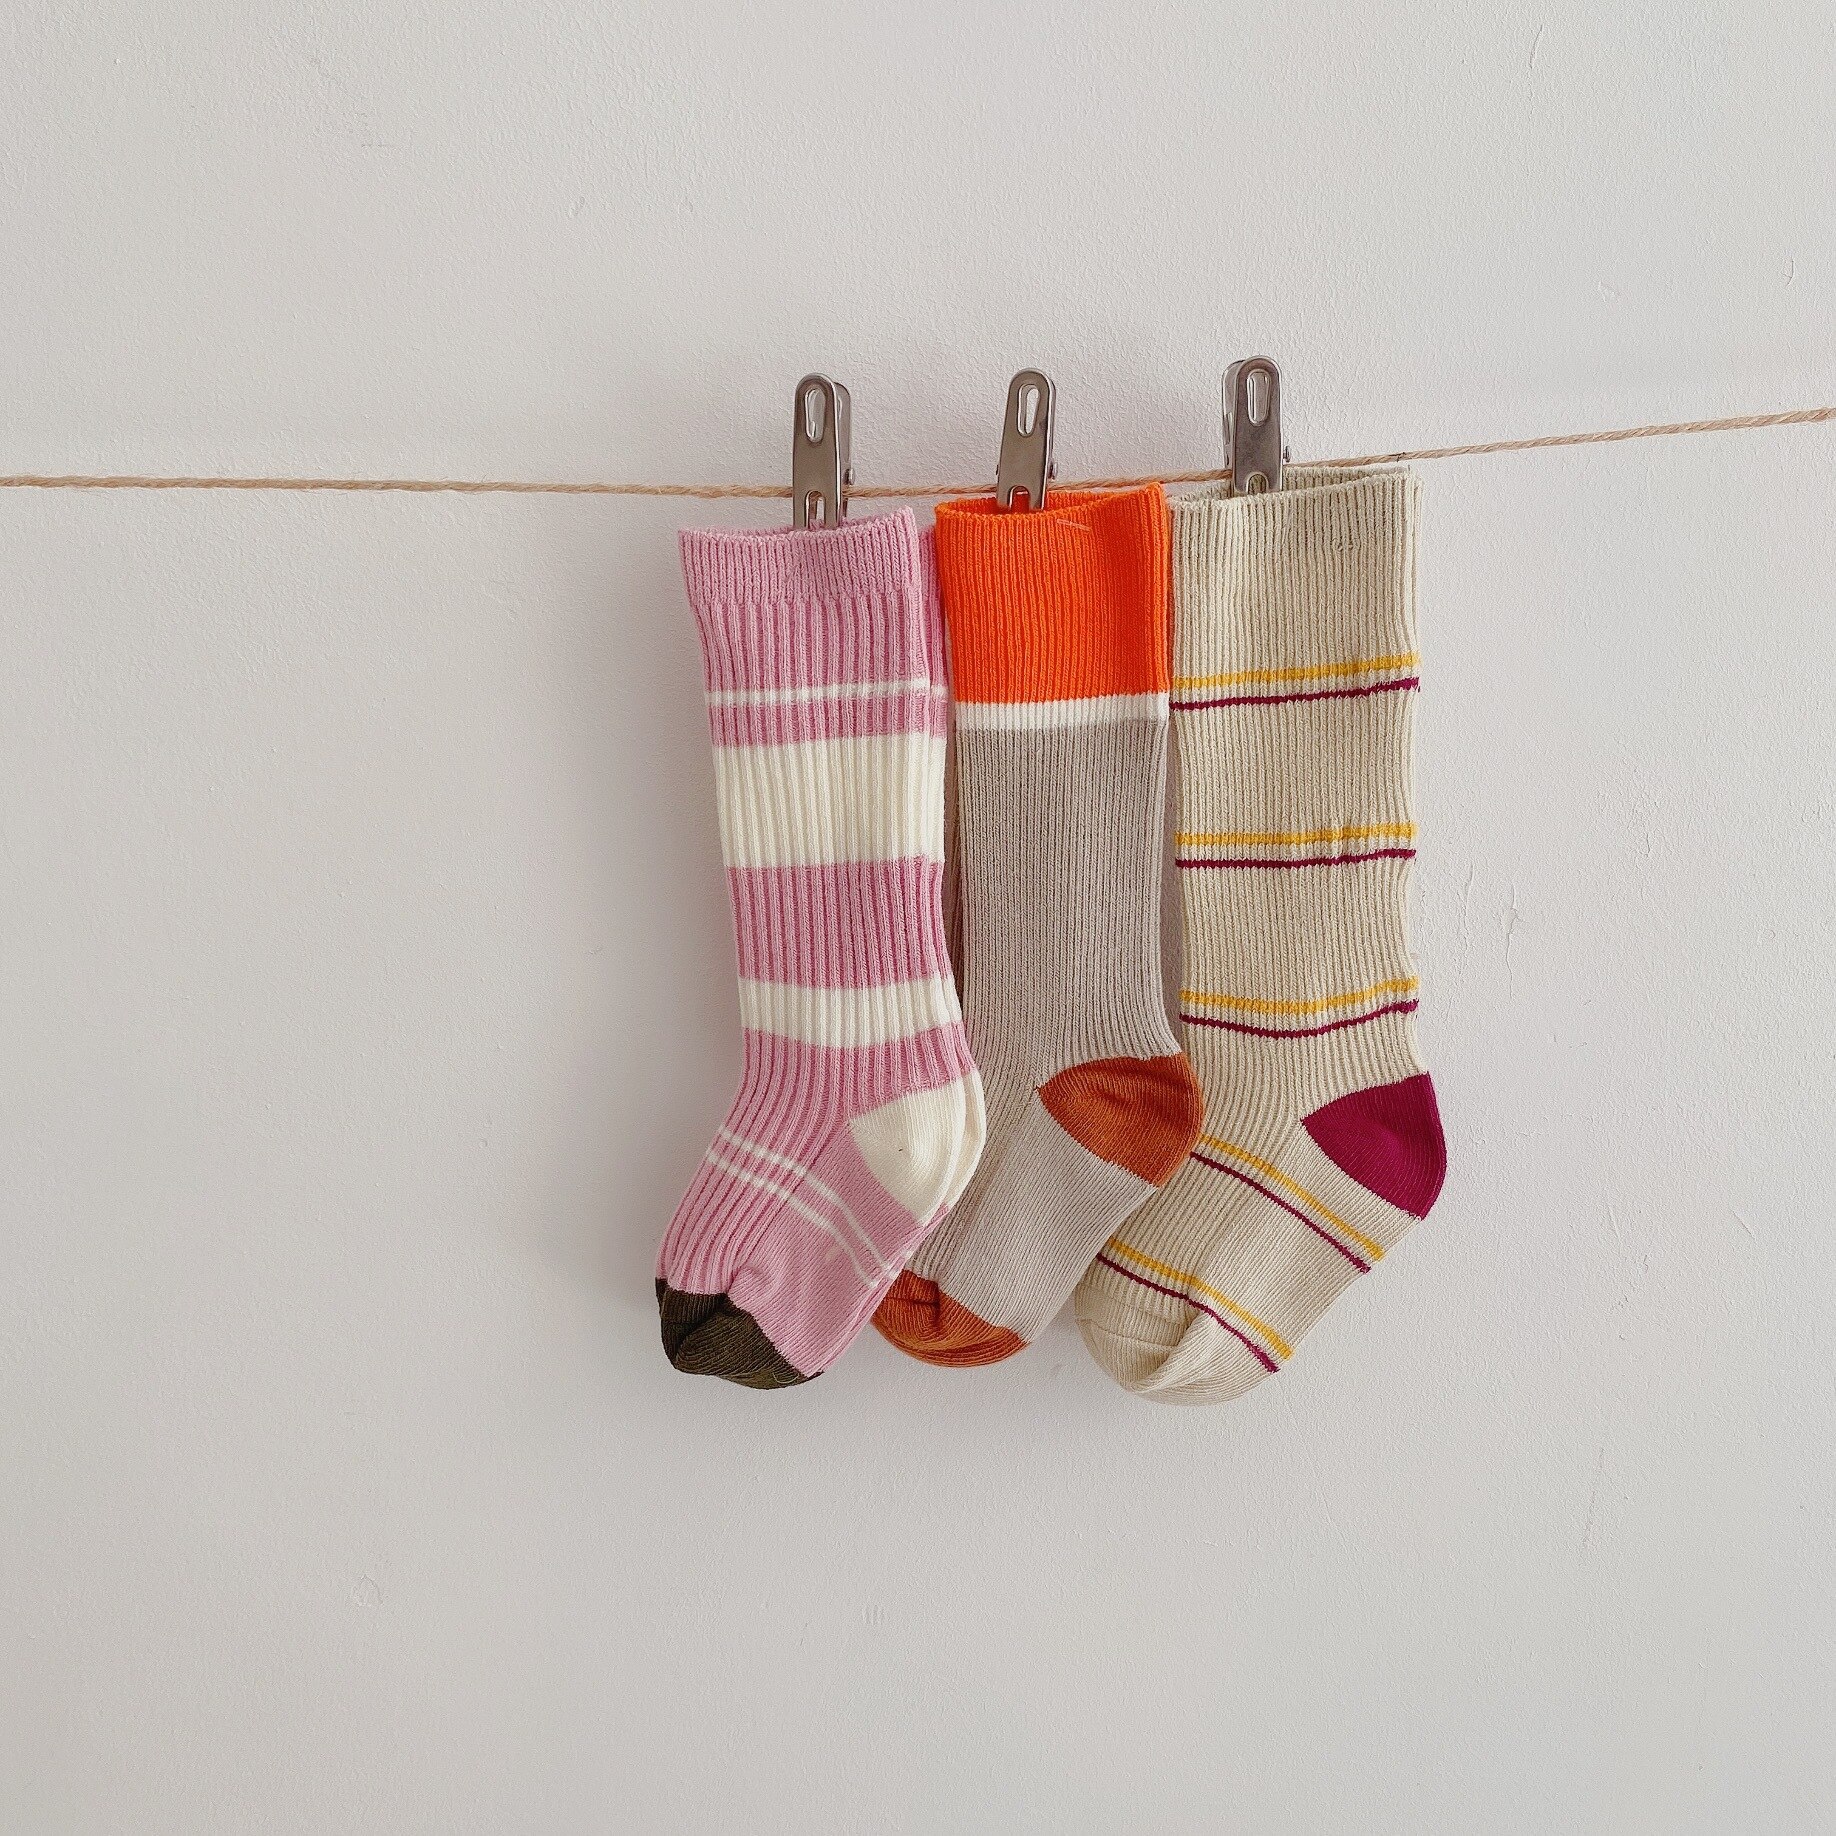 3 Pairs/lot Children Baby Socks Knitted Cotton Long Tube Socks Kids Knee High Toddler Socks Kids Girls Stripe Autumn Cute Socks: 3 pairs2 / M 4-6T